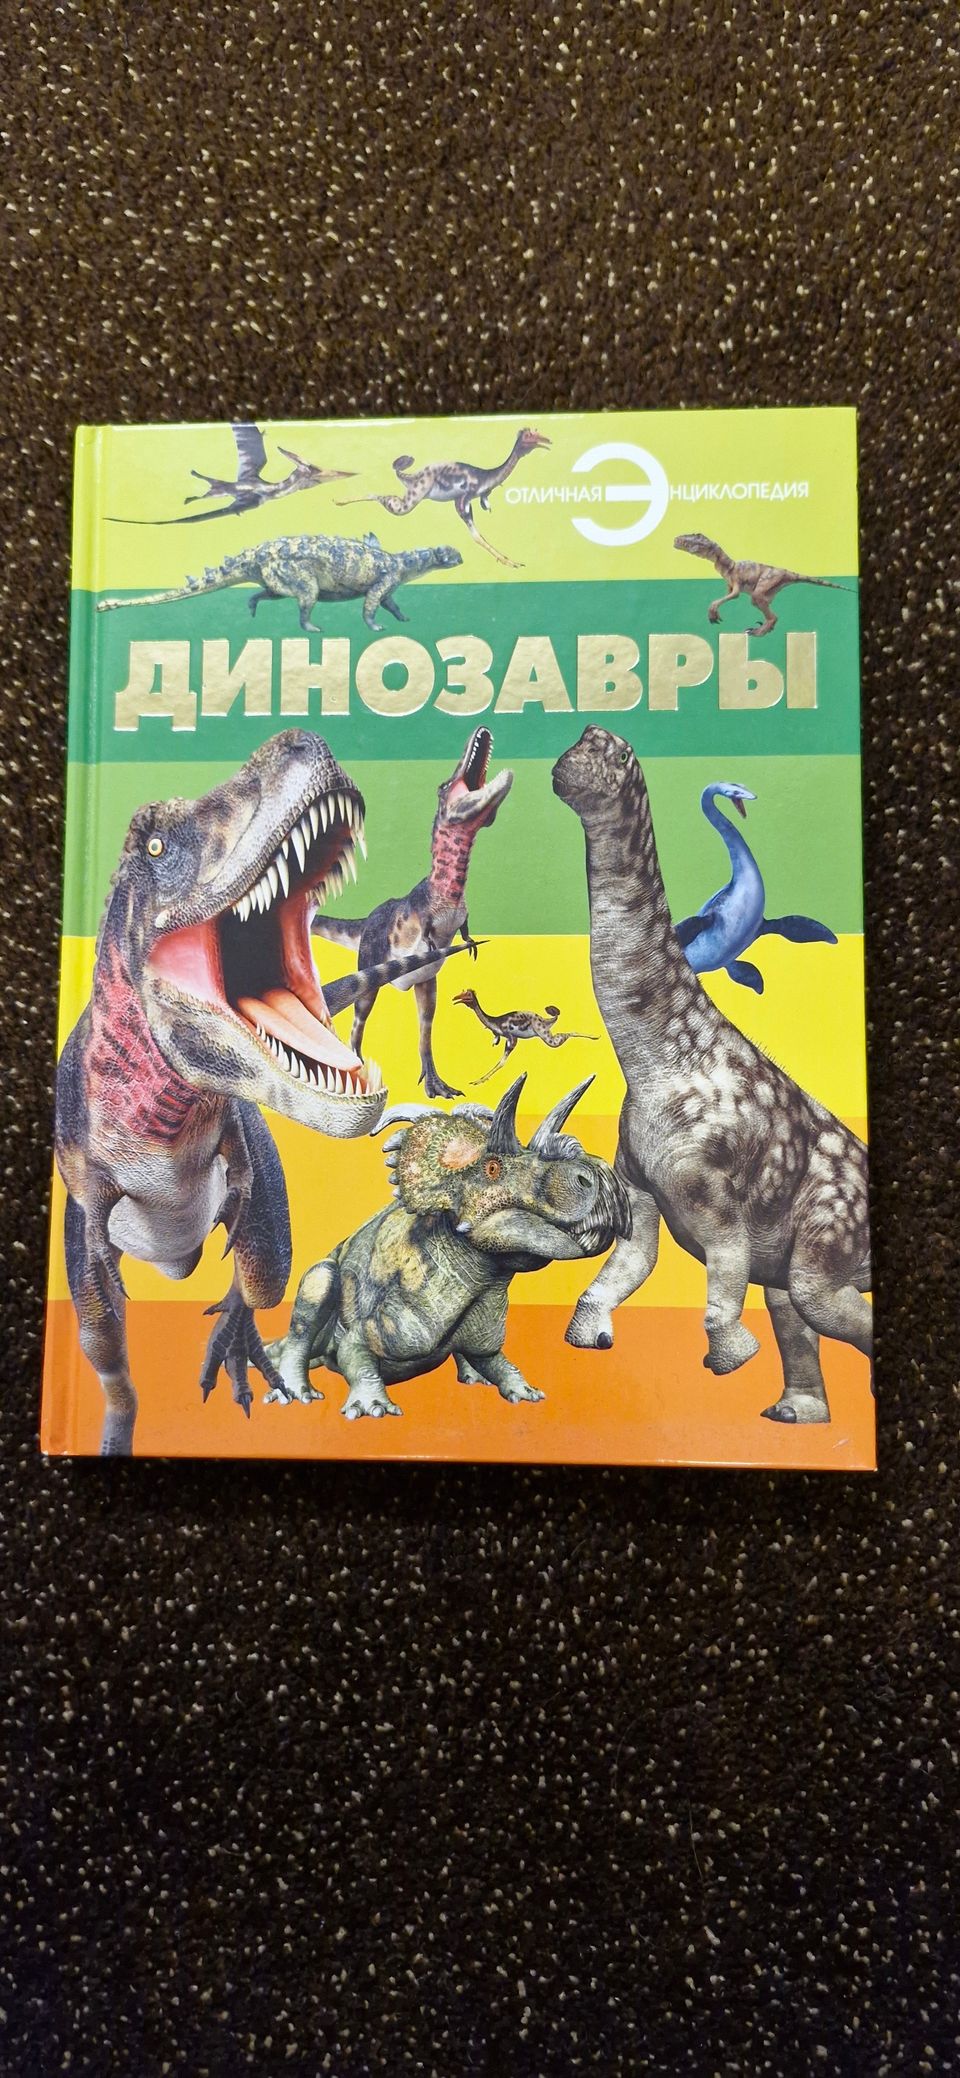 Venäjänkielinen lasten kirja